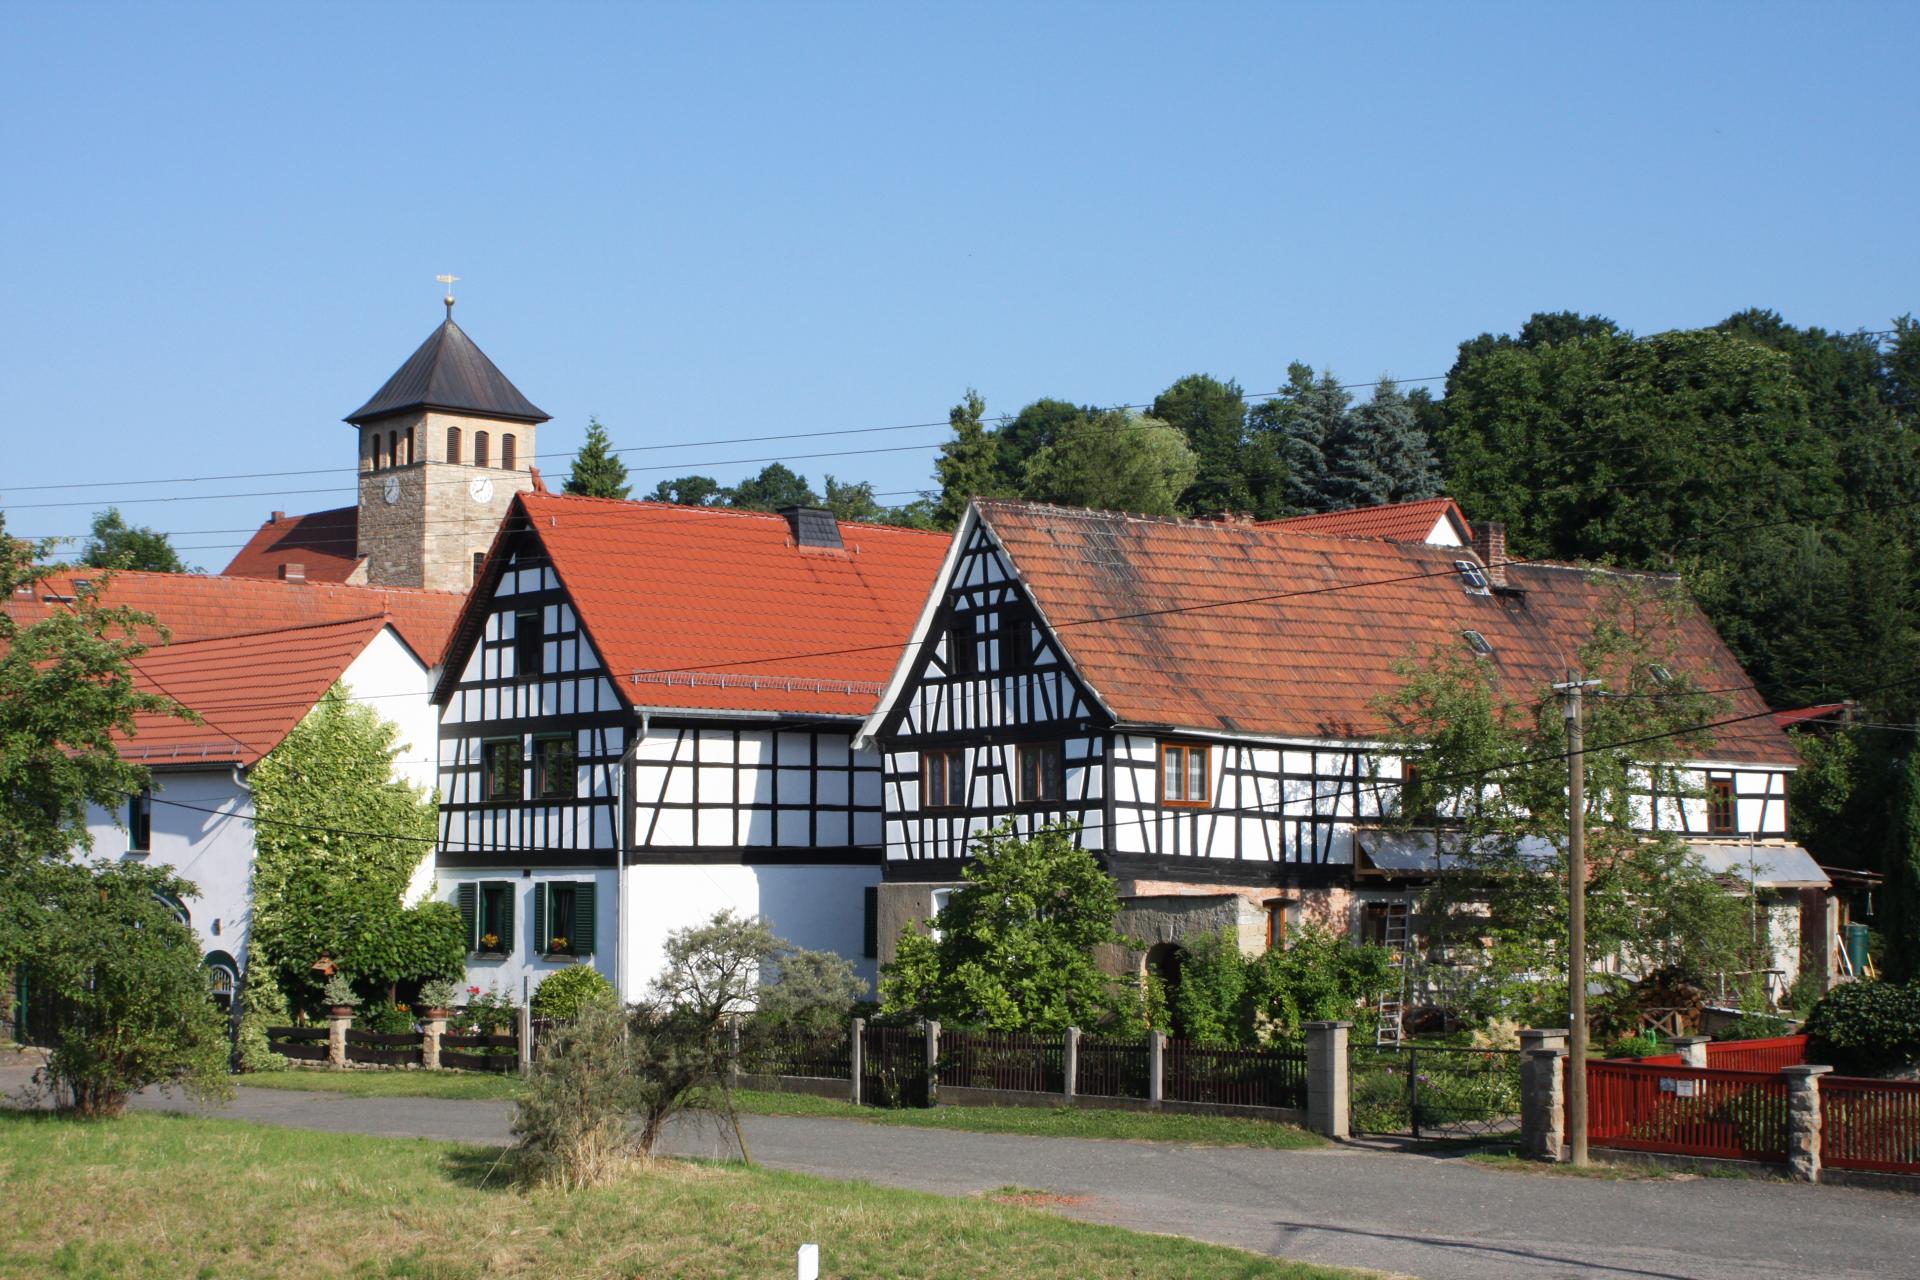 Häuser in Harpersdorf